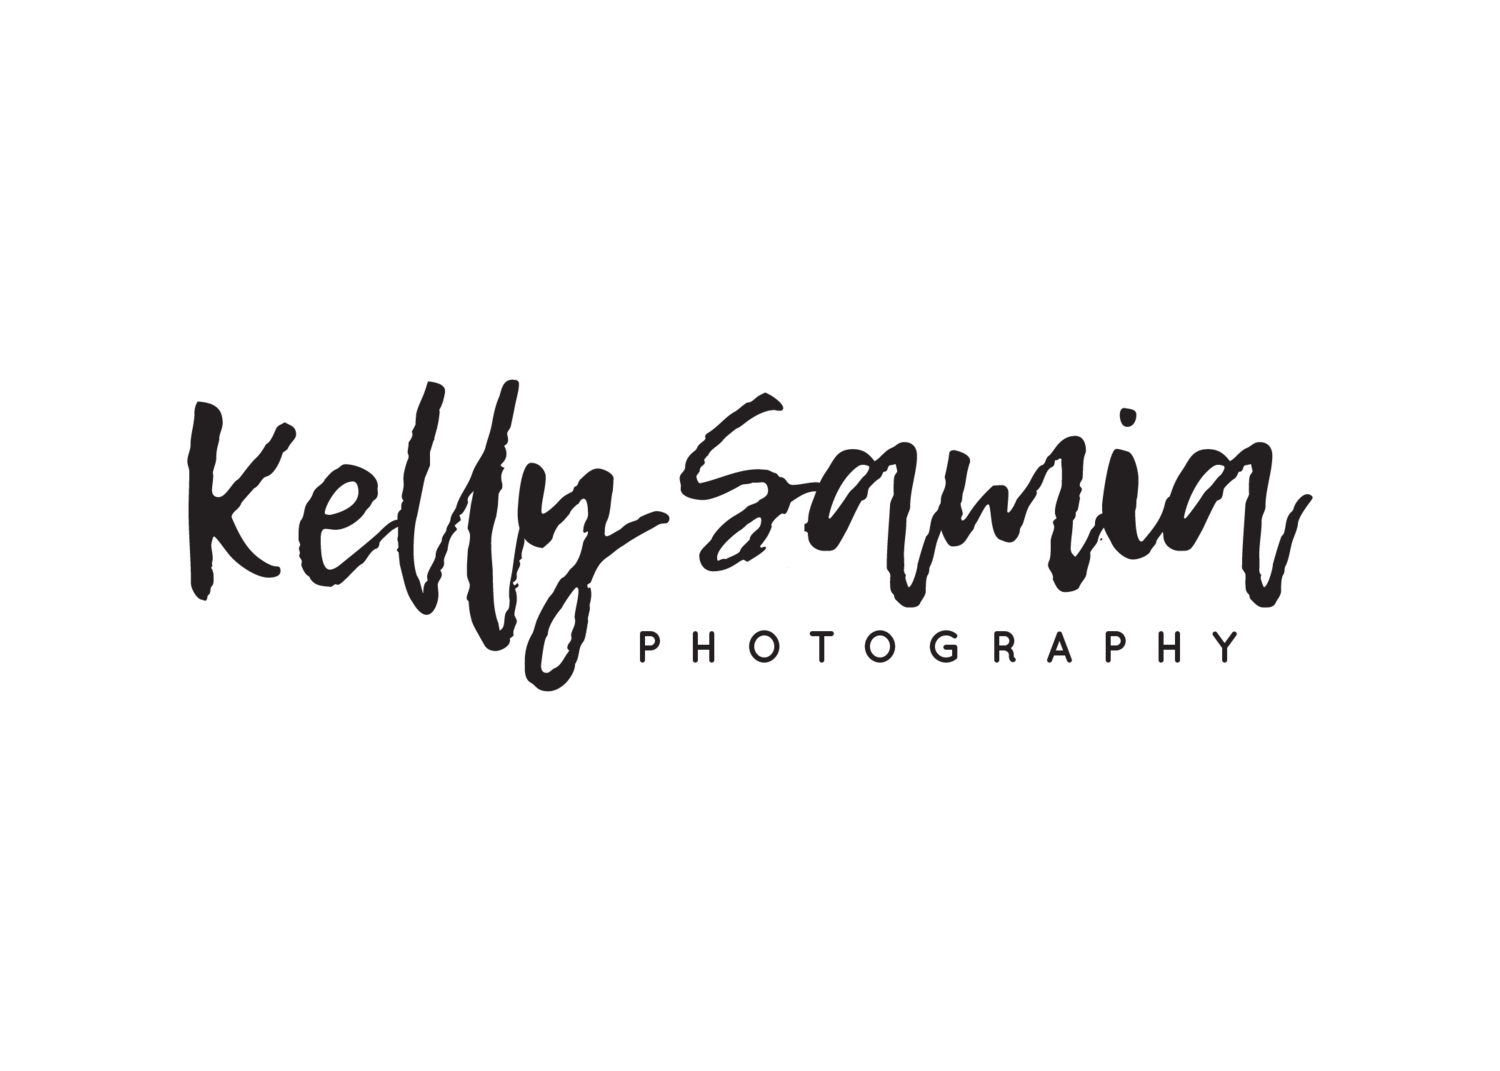 Kelly Samia Photography